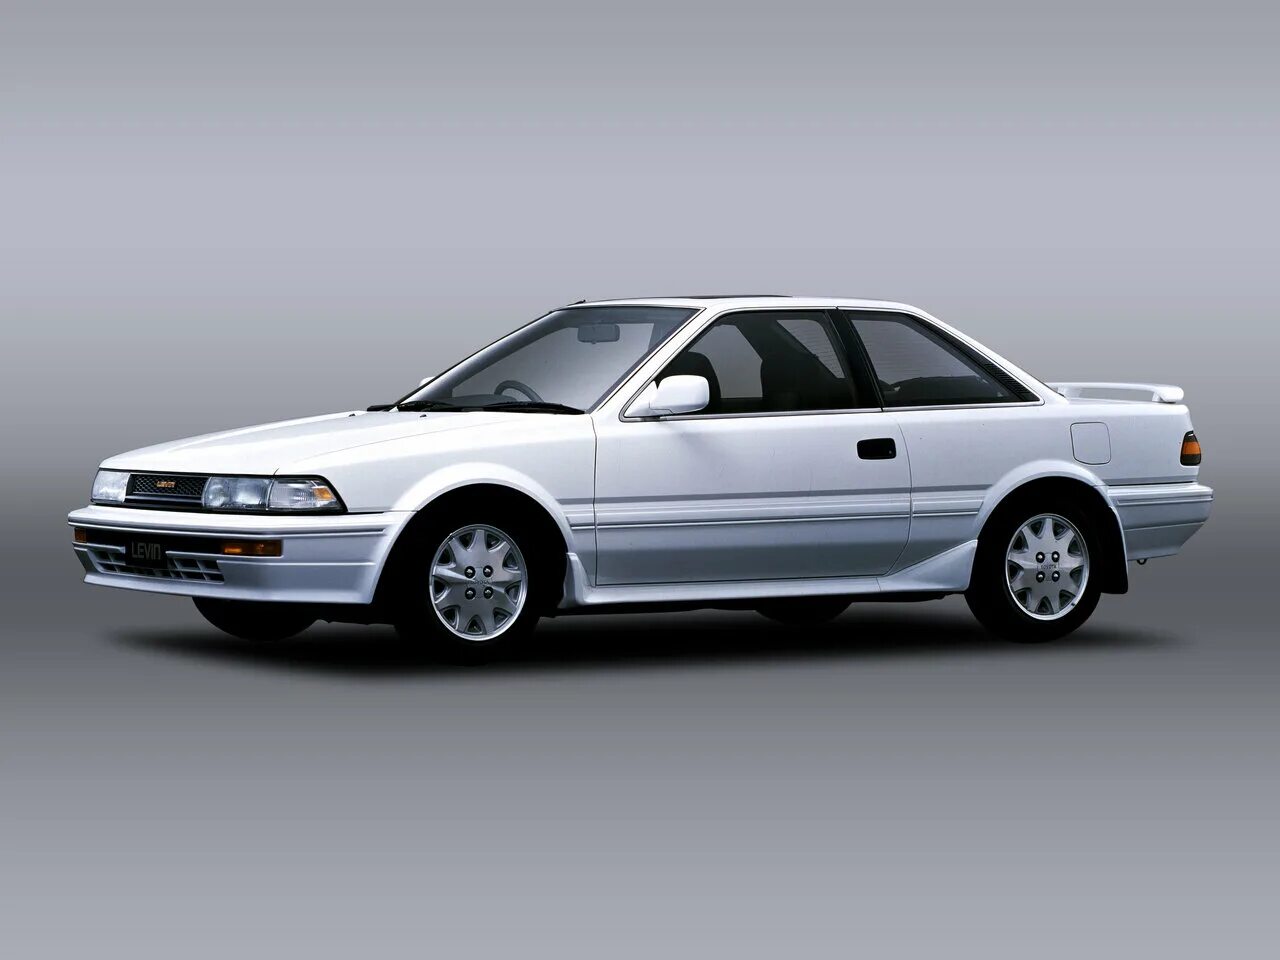 Тойота спринтер ае 91. Toyota Corolla Levin ae91. Toyota Corolla Levin 1987. Toyota Corolla Levin v (ae91/ae92). Toyota Corolla Levin (ae91/92).